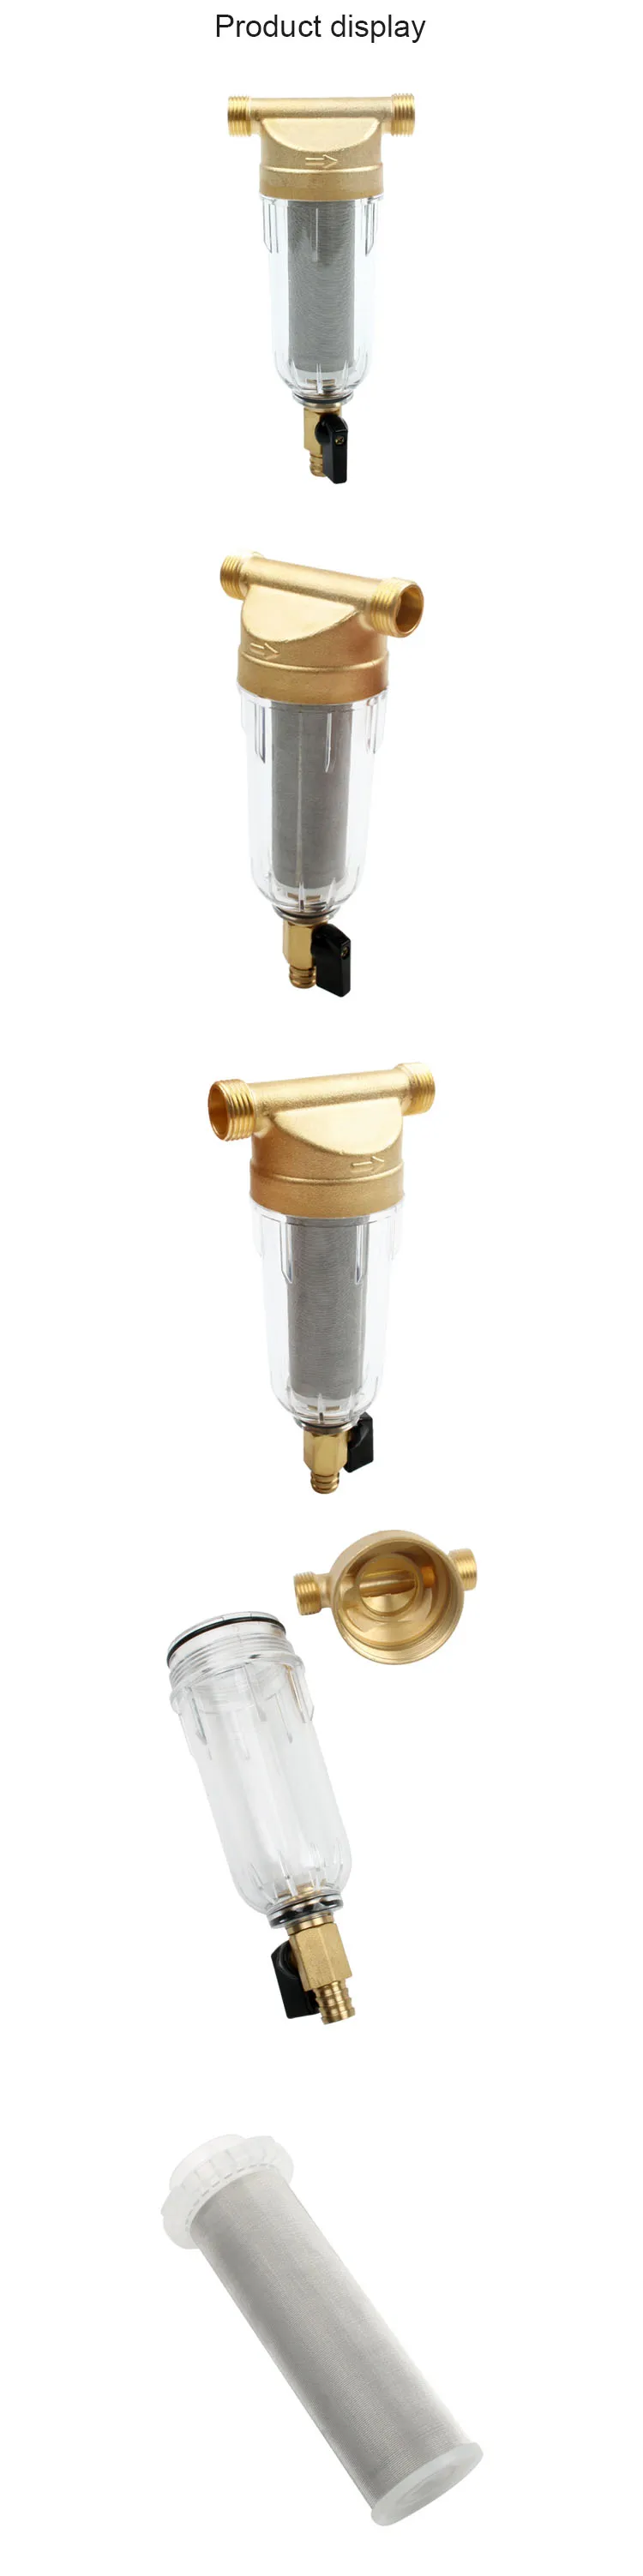 DMWD передний фильтр для воды центральный предфильтр передний Очиститель фильтр для воды картридж удаления ржавчины загрязняющих отложений трубы